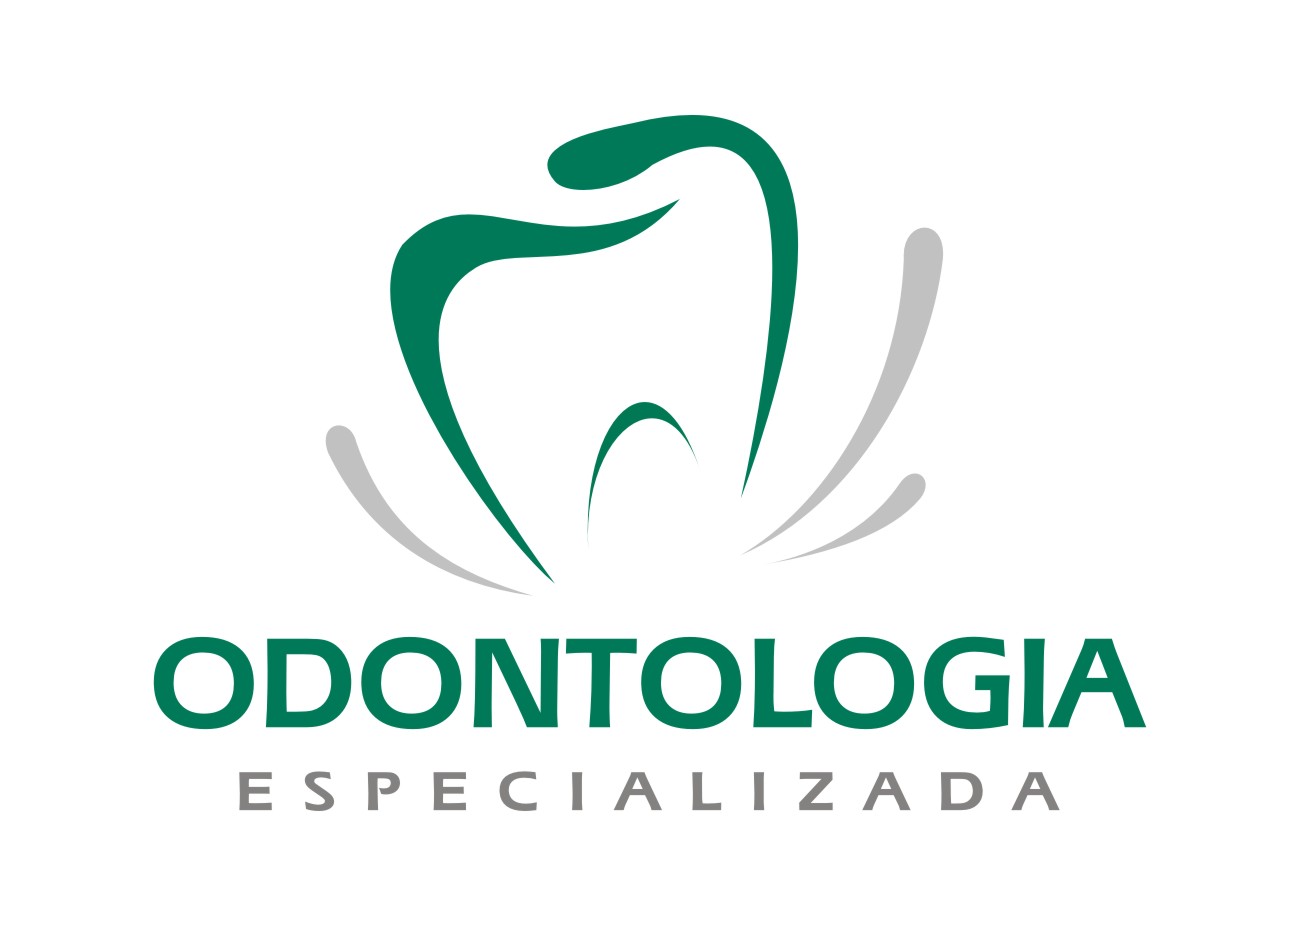 Viver Odontologia Logo photo - 1